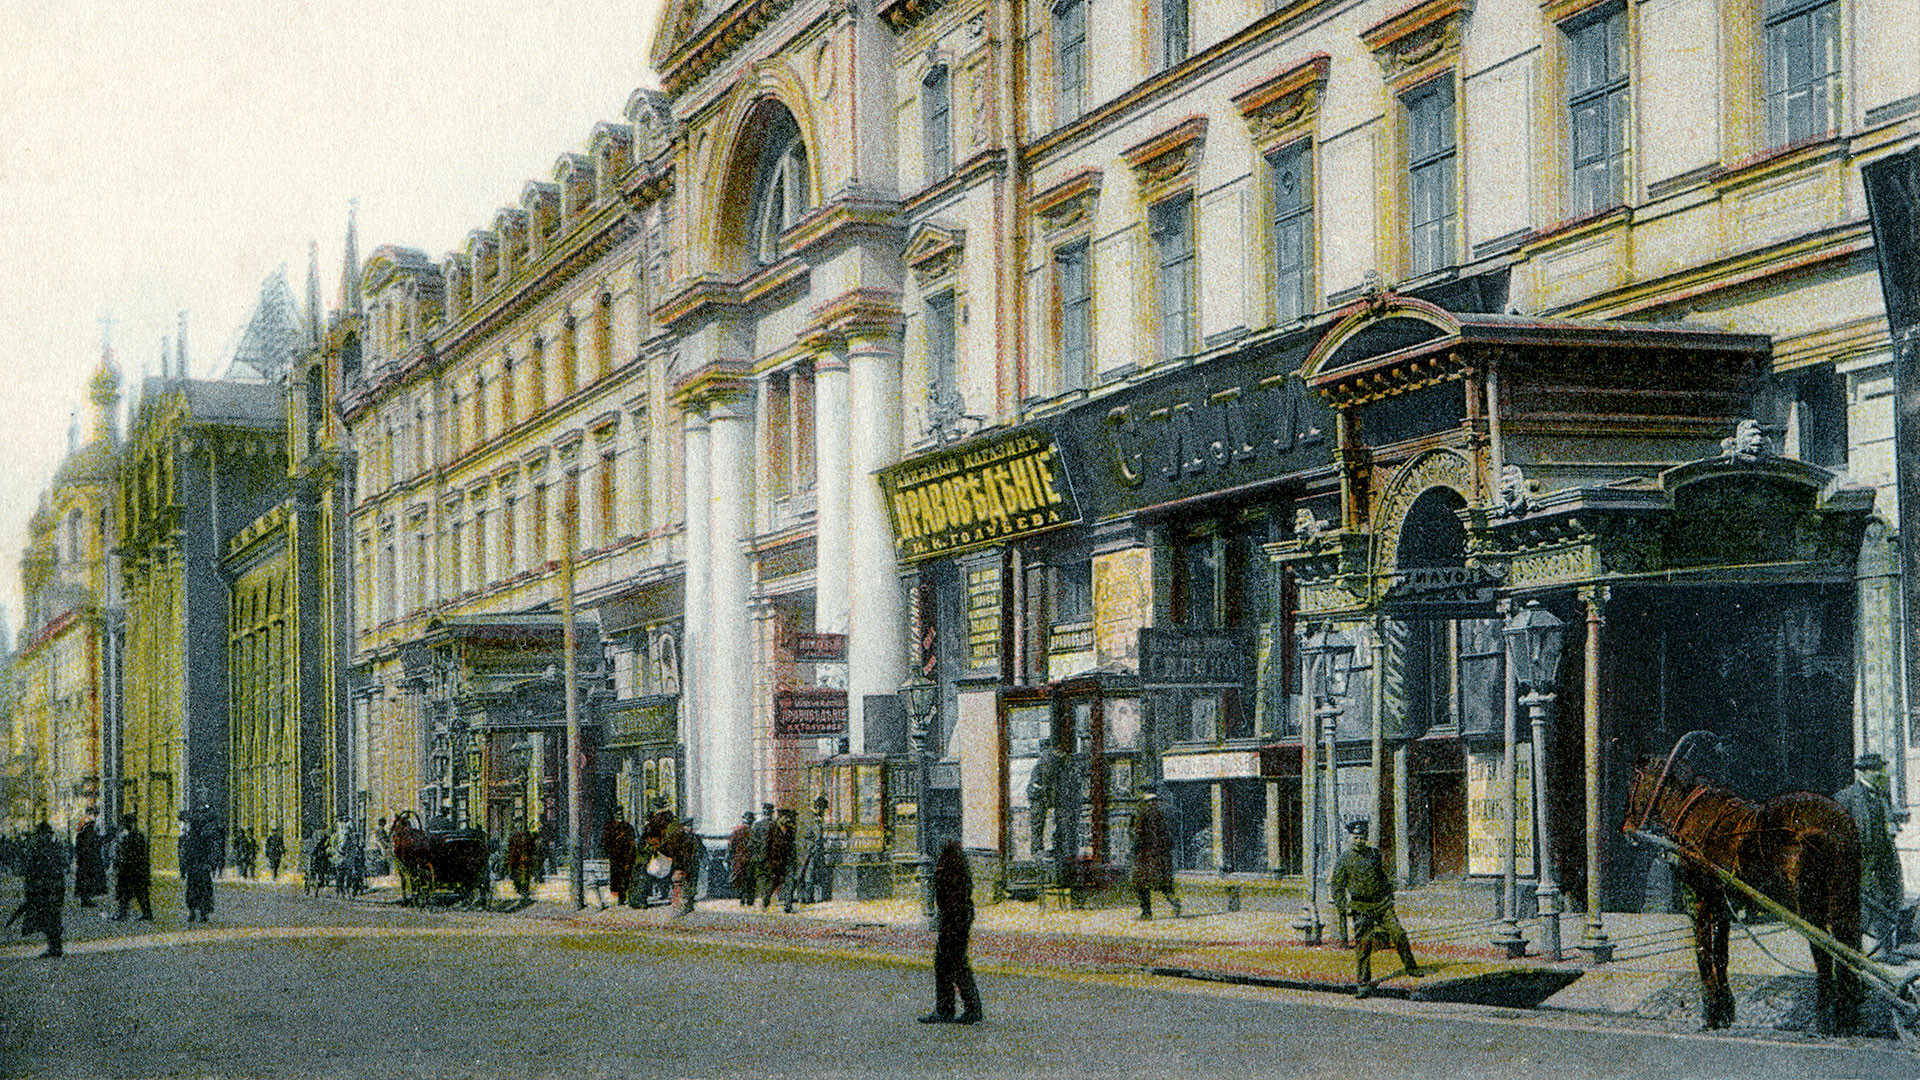 Nikolskaya Street in Moscow. Slavyansky Bazar Hotel. A pre-revolutionary postcard.